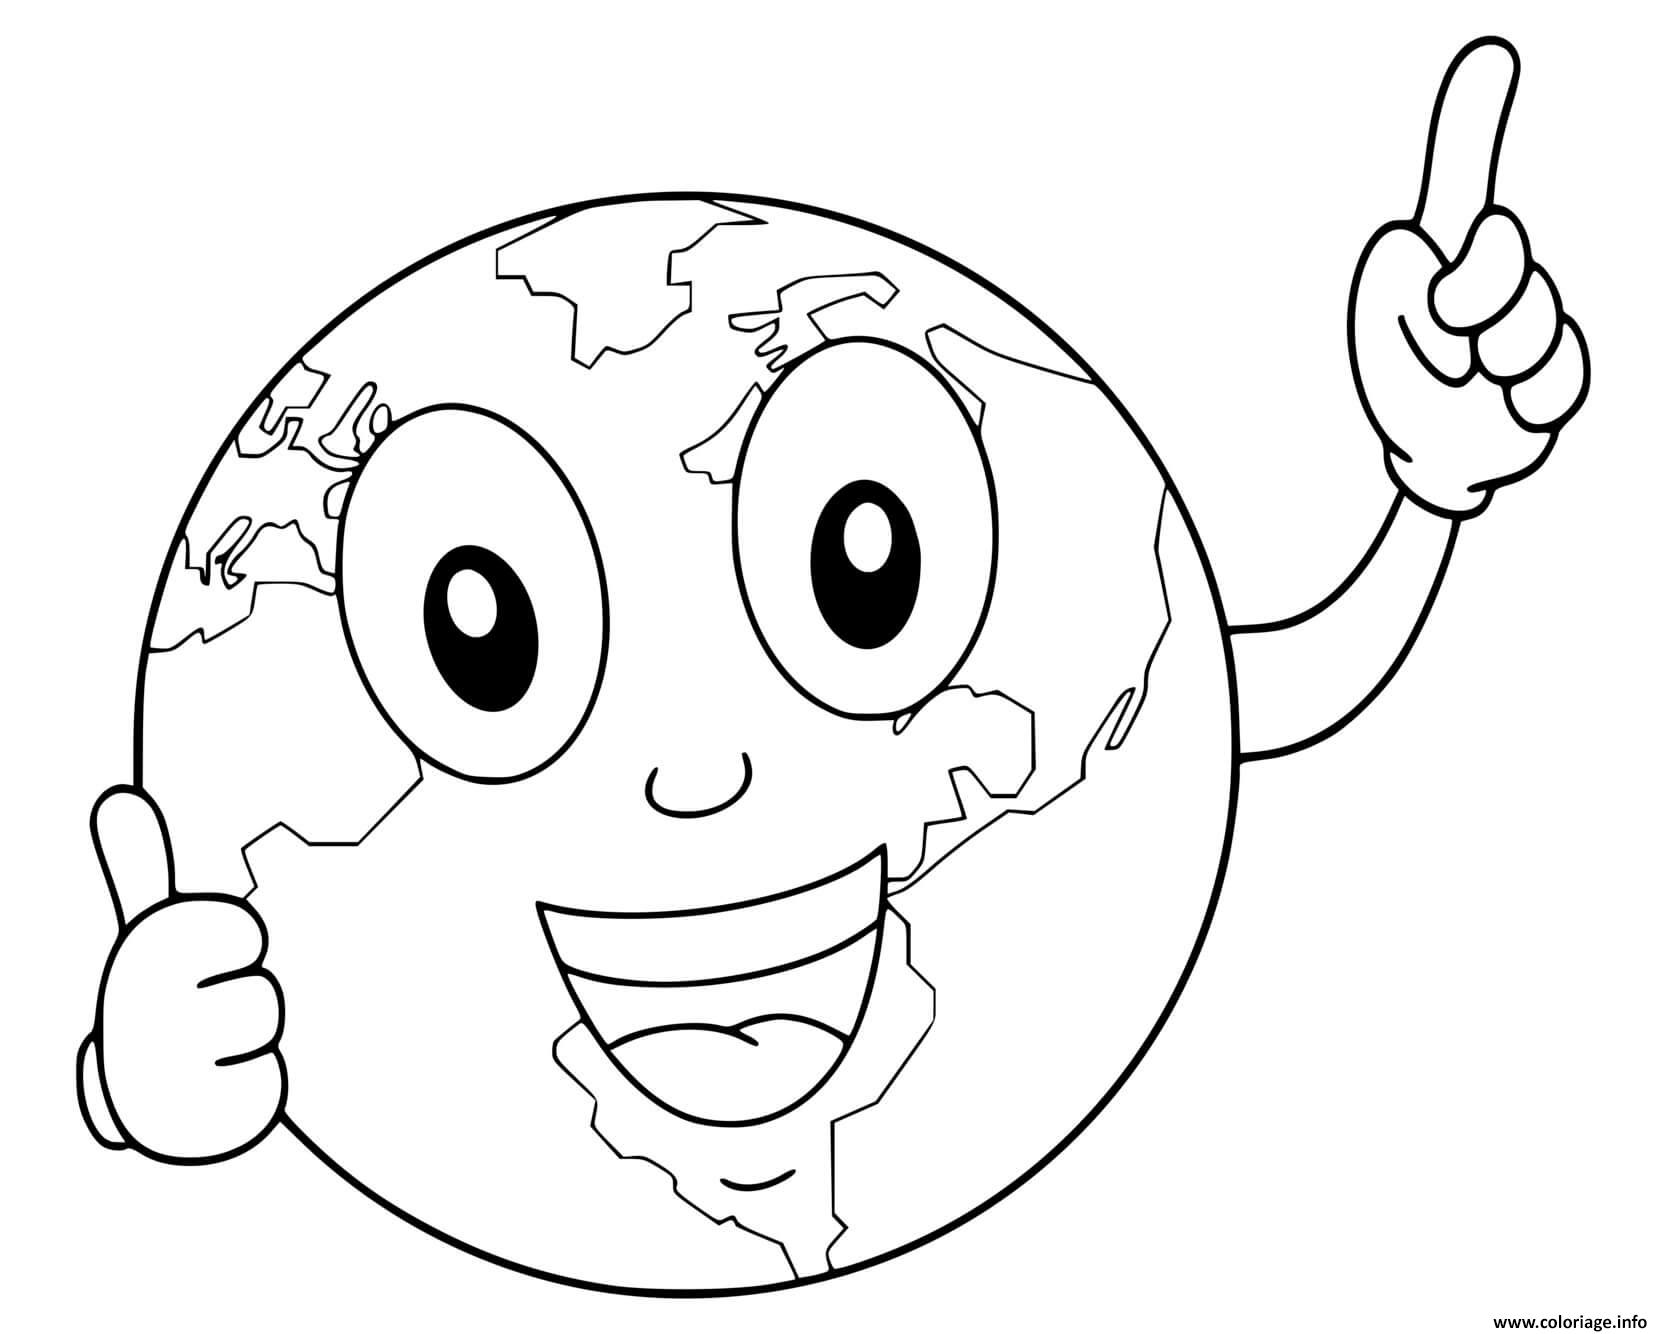 Dessin planete terre dessin anime sourire yeux Coloriage Gratuit à Imprimer